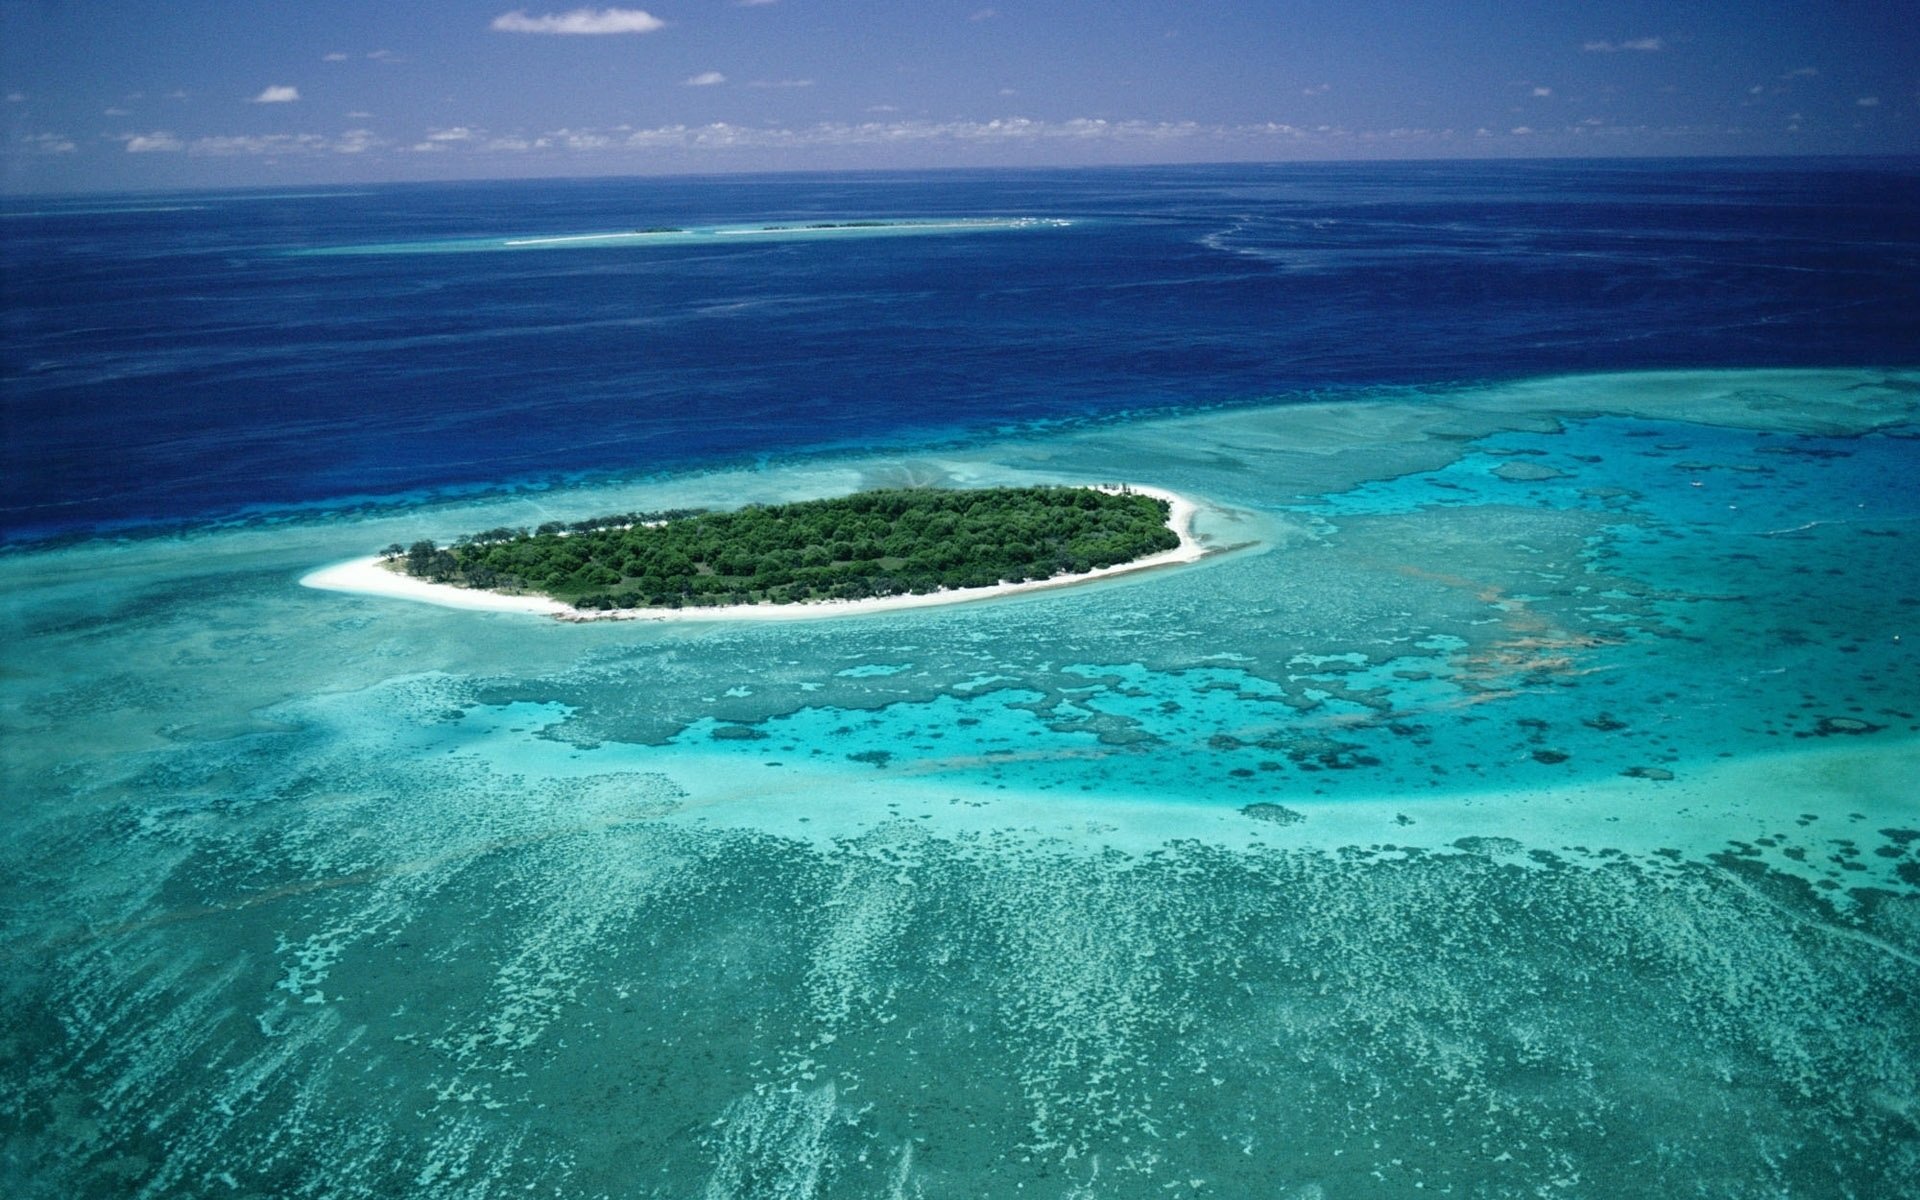 Австралия прилегающие острова. Большой Барьерный риф. Большой Барьерный риф (ББР), Австралия. Большой коралловый риф в Австралии. Коралловый остров леди Масгрэйв Австралия.